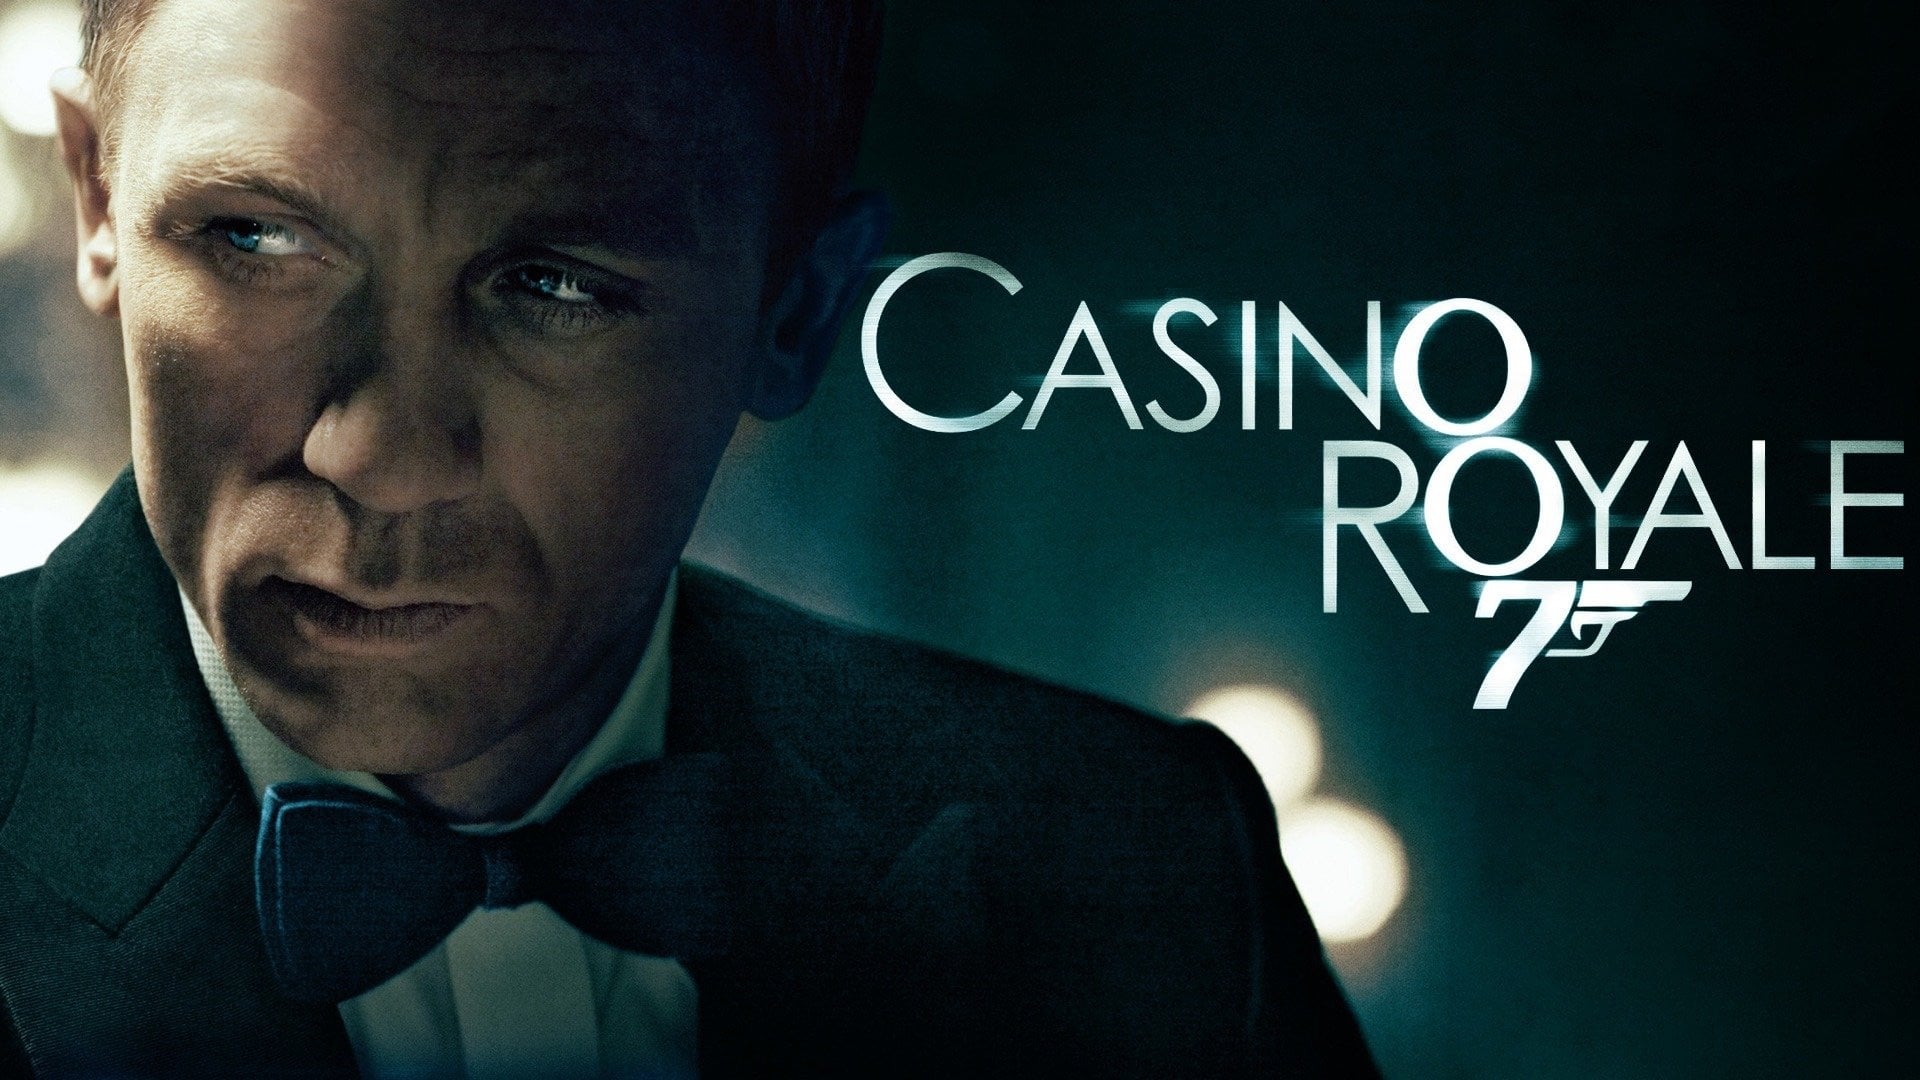 Watch online free casino royale игры.игровые автоматы.играть бесплатно